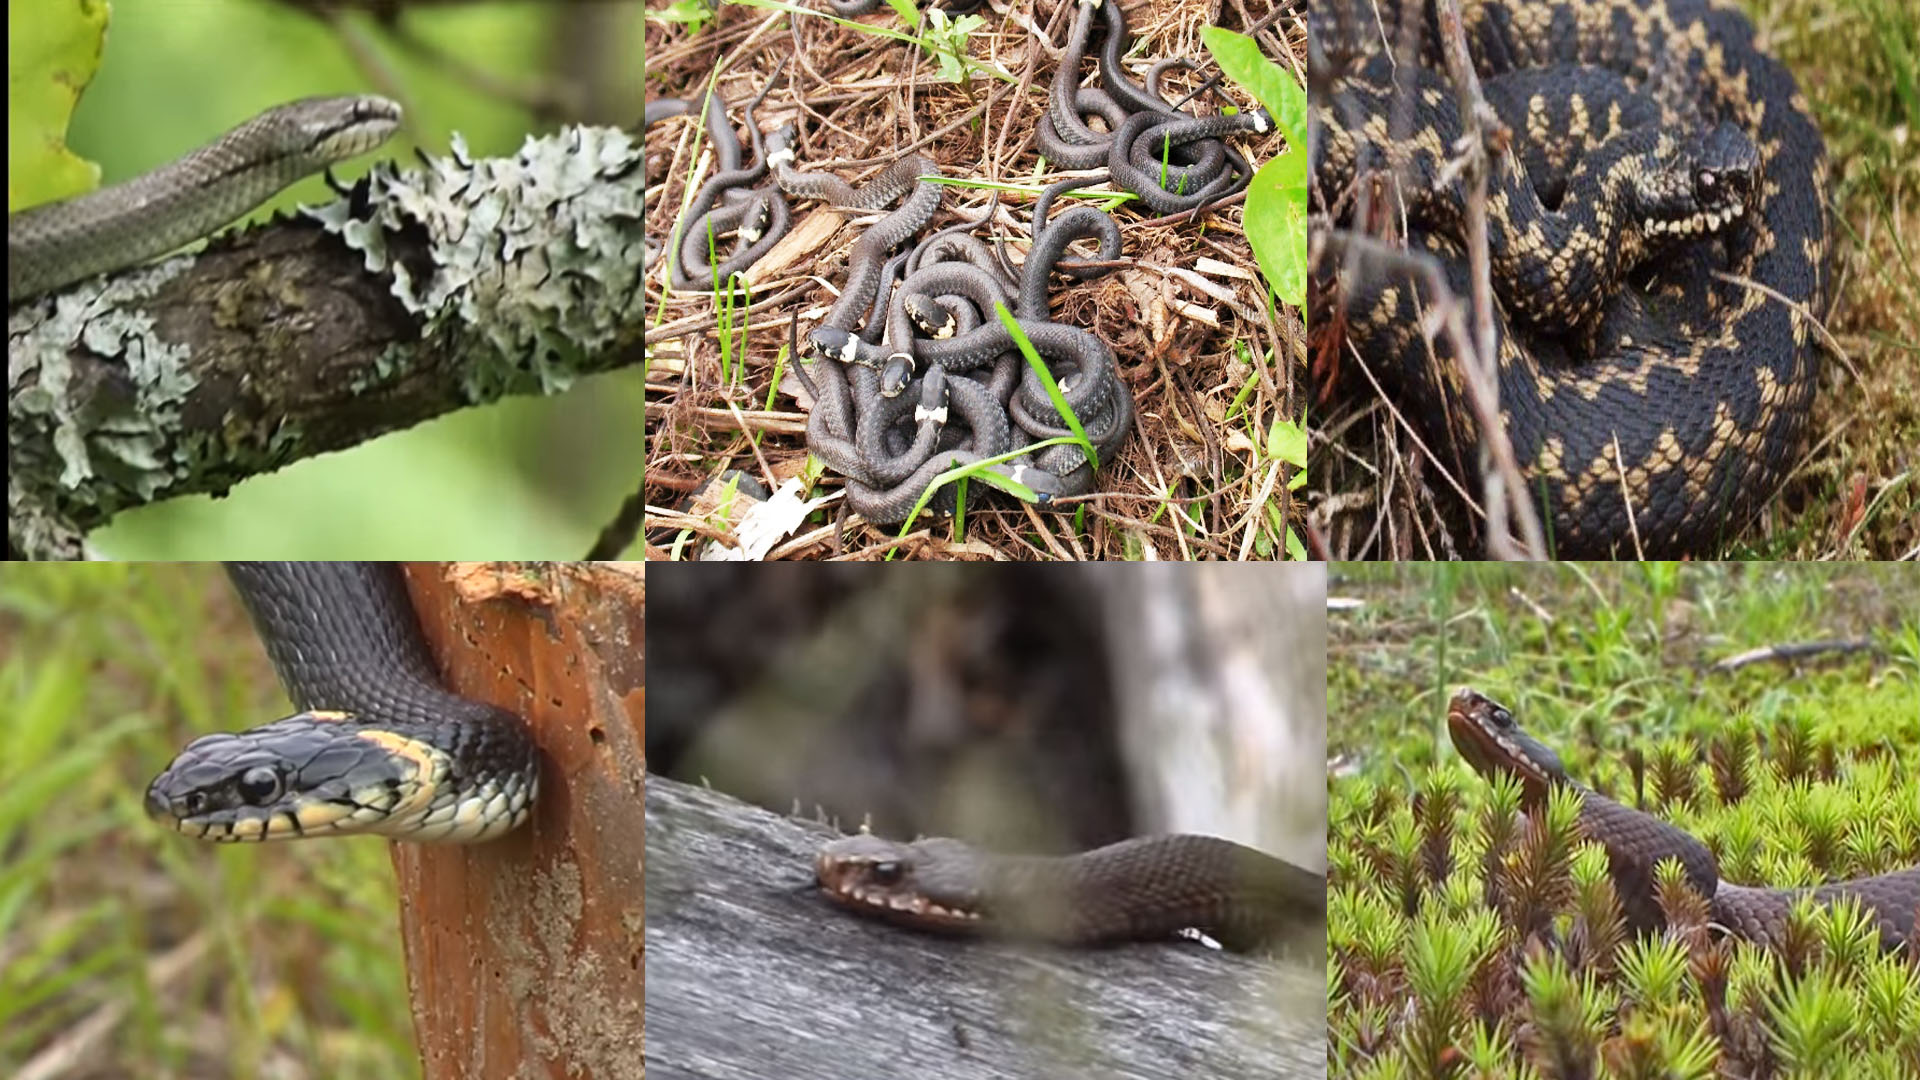 Ядовитые змеи в лесу. Меры предосторожности при встречи со змеёй. Что надо знать каждому?